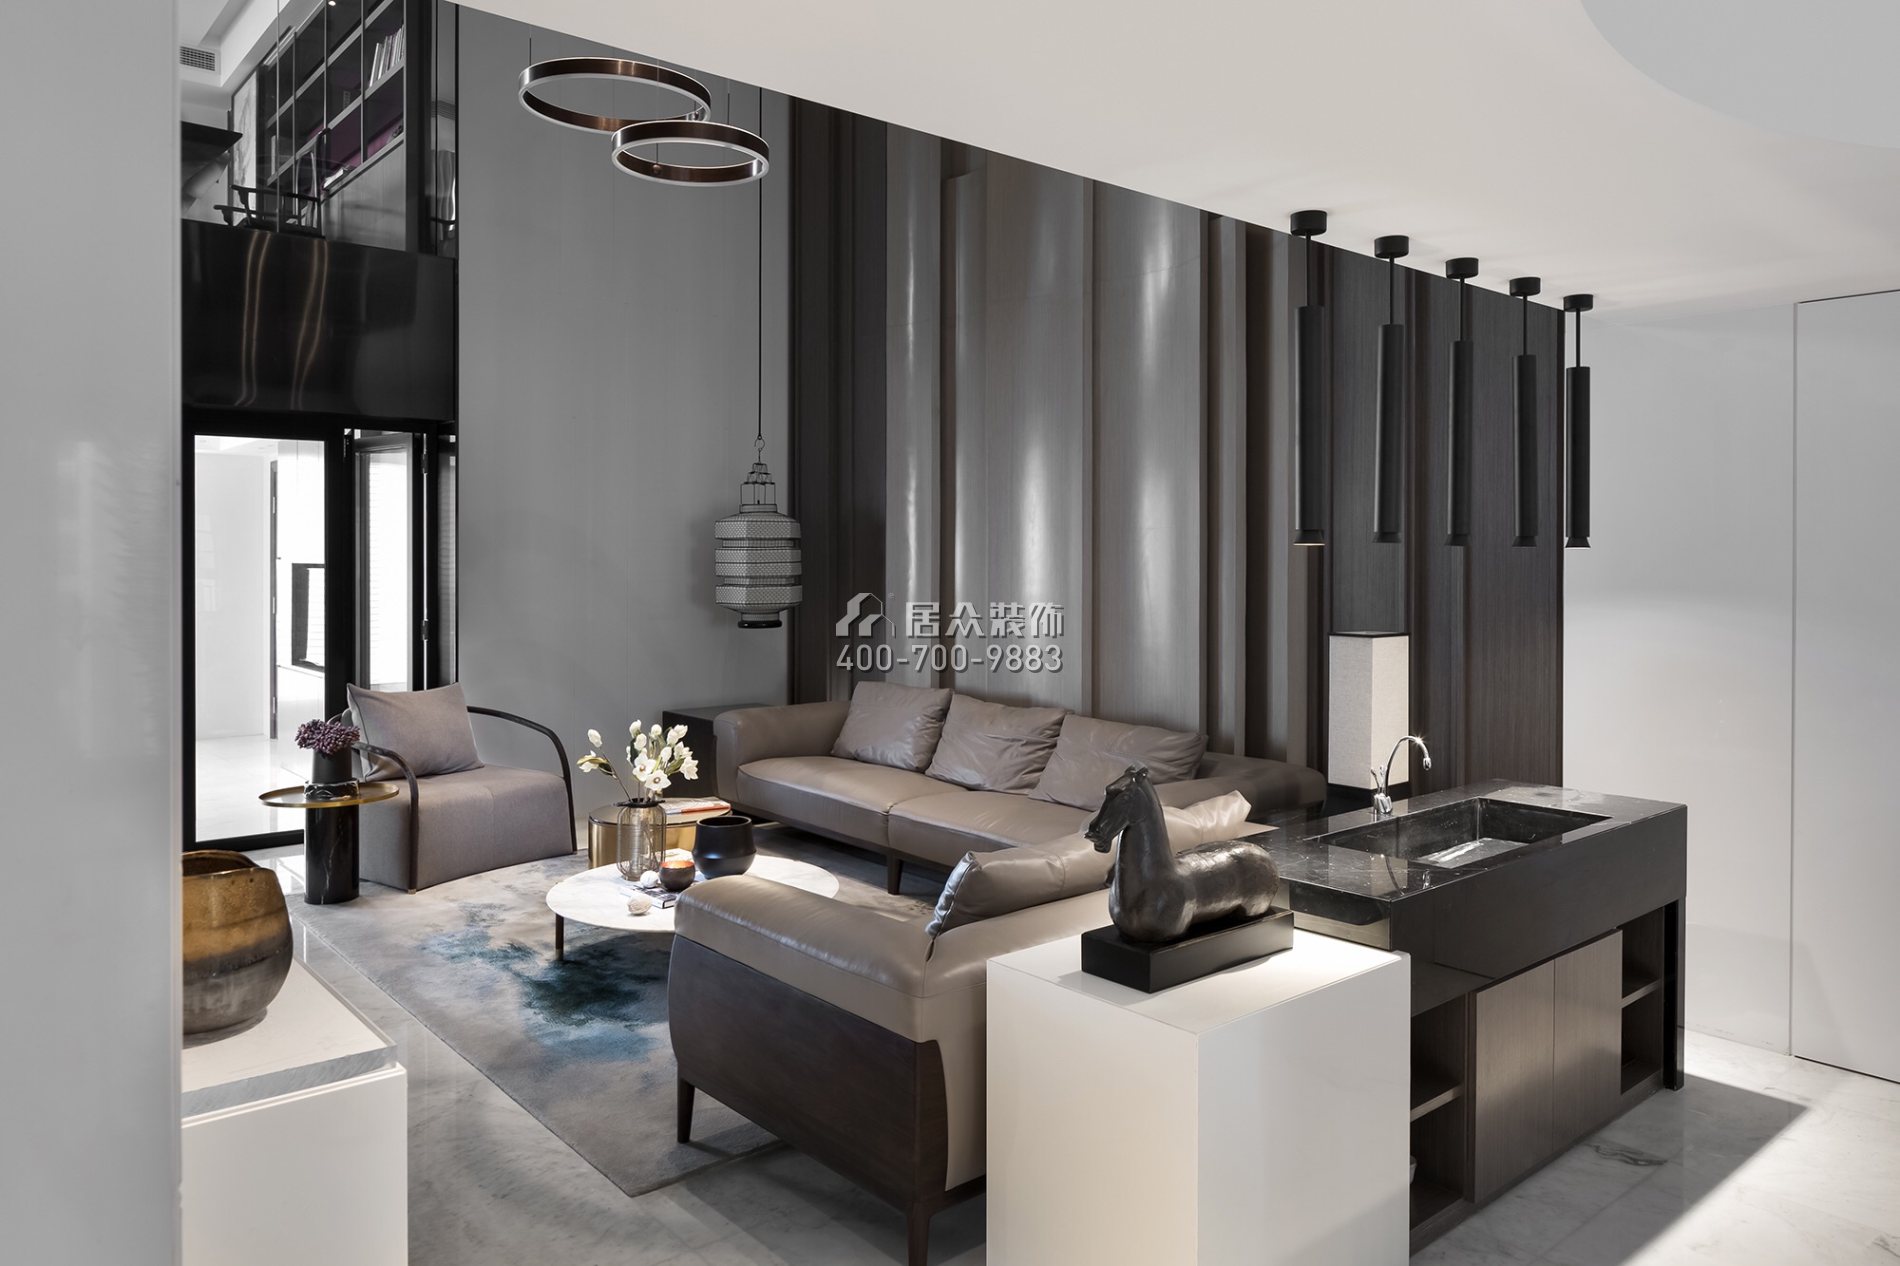 江尚東山230平方米現代簡約風格復式戶型客廳裝修效果圖